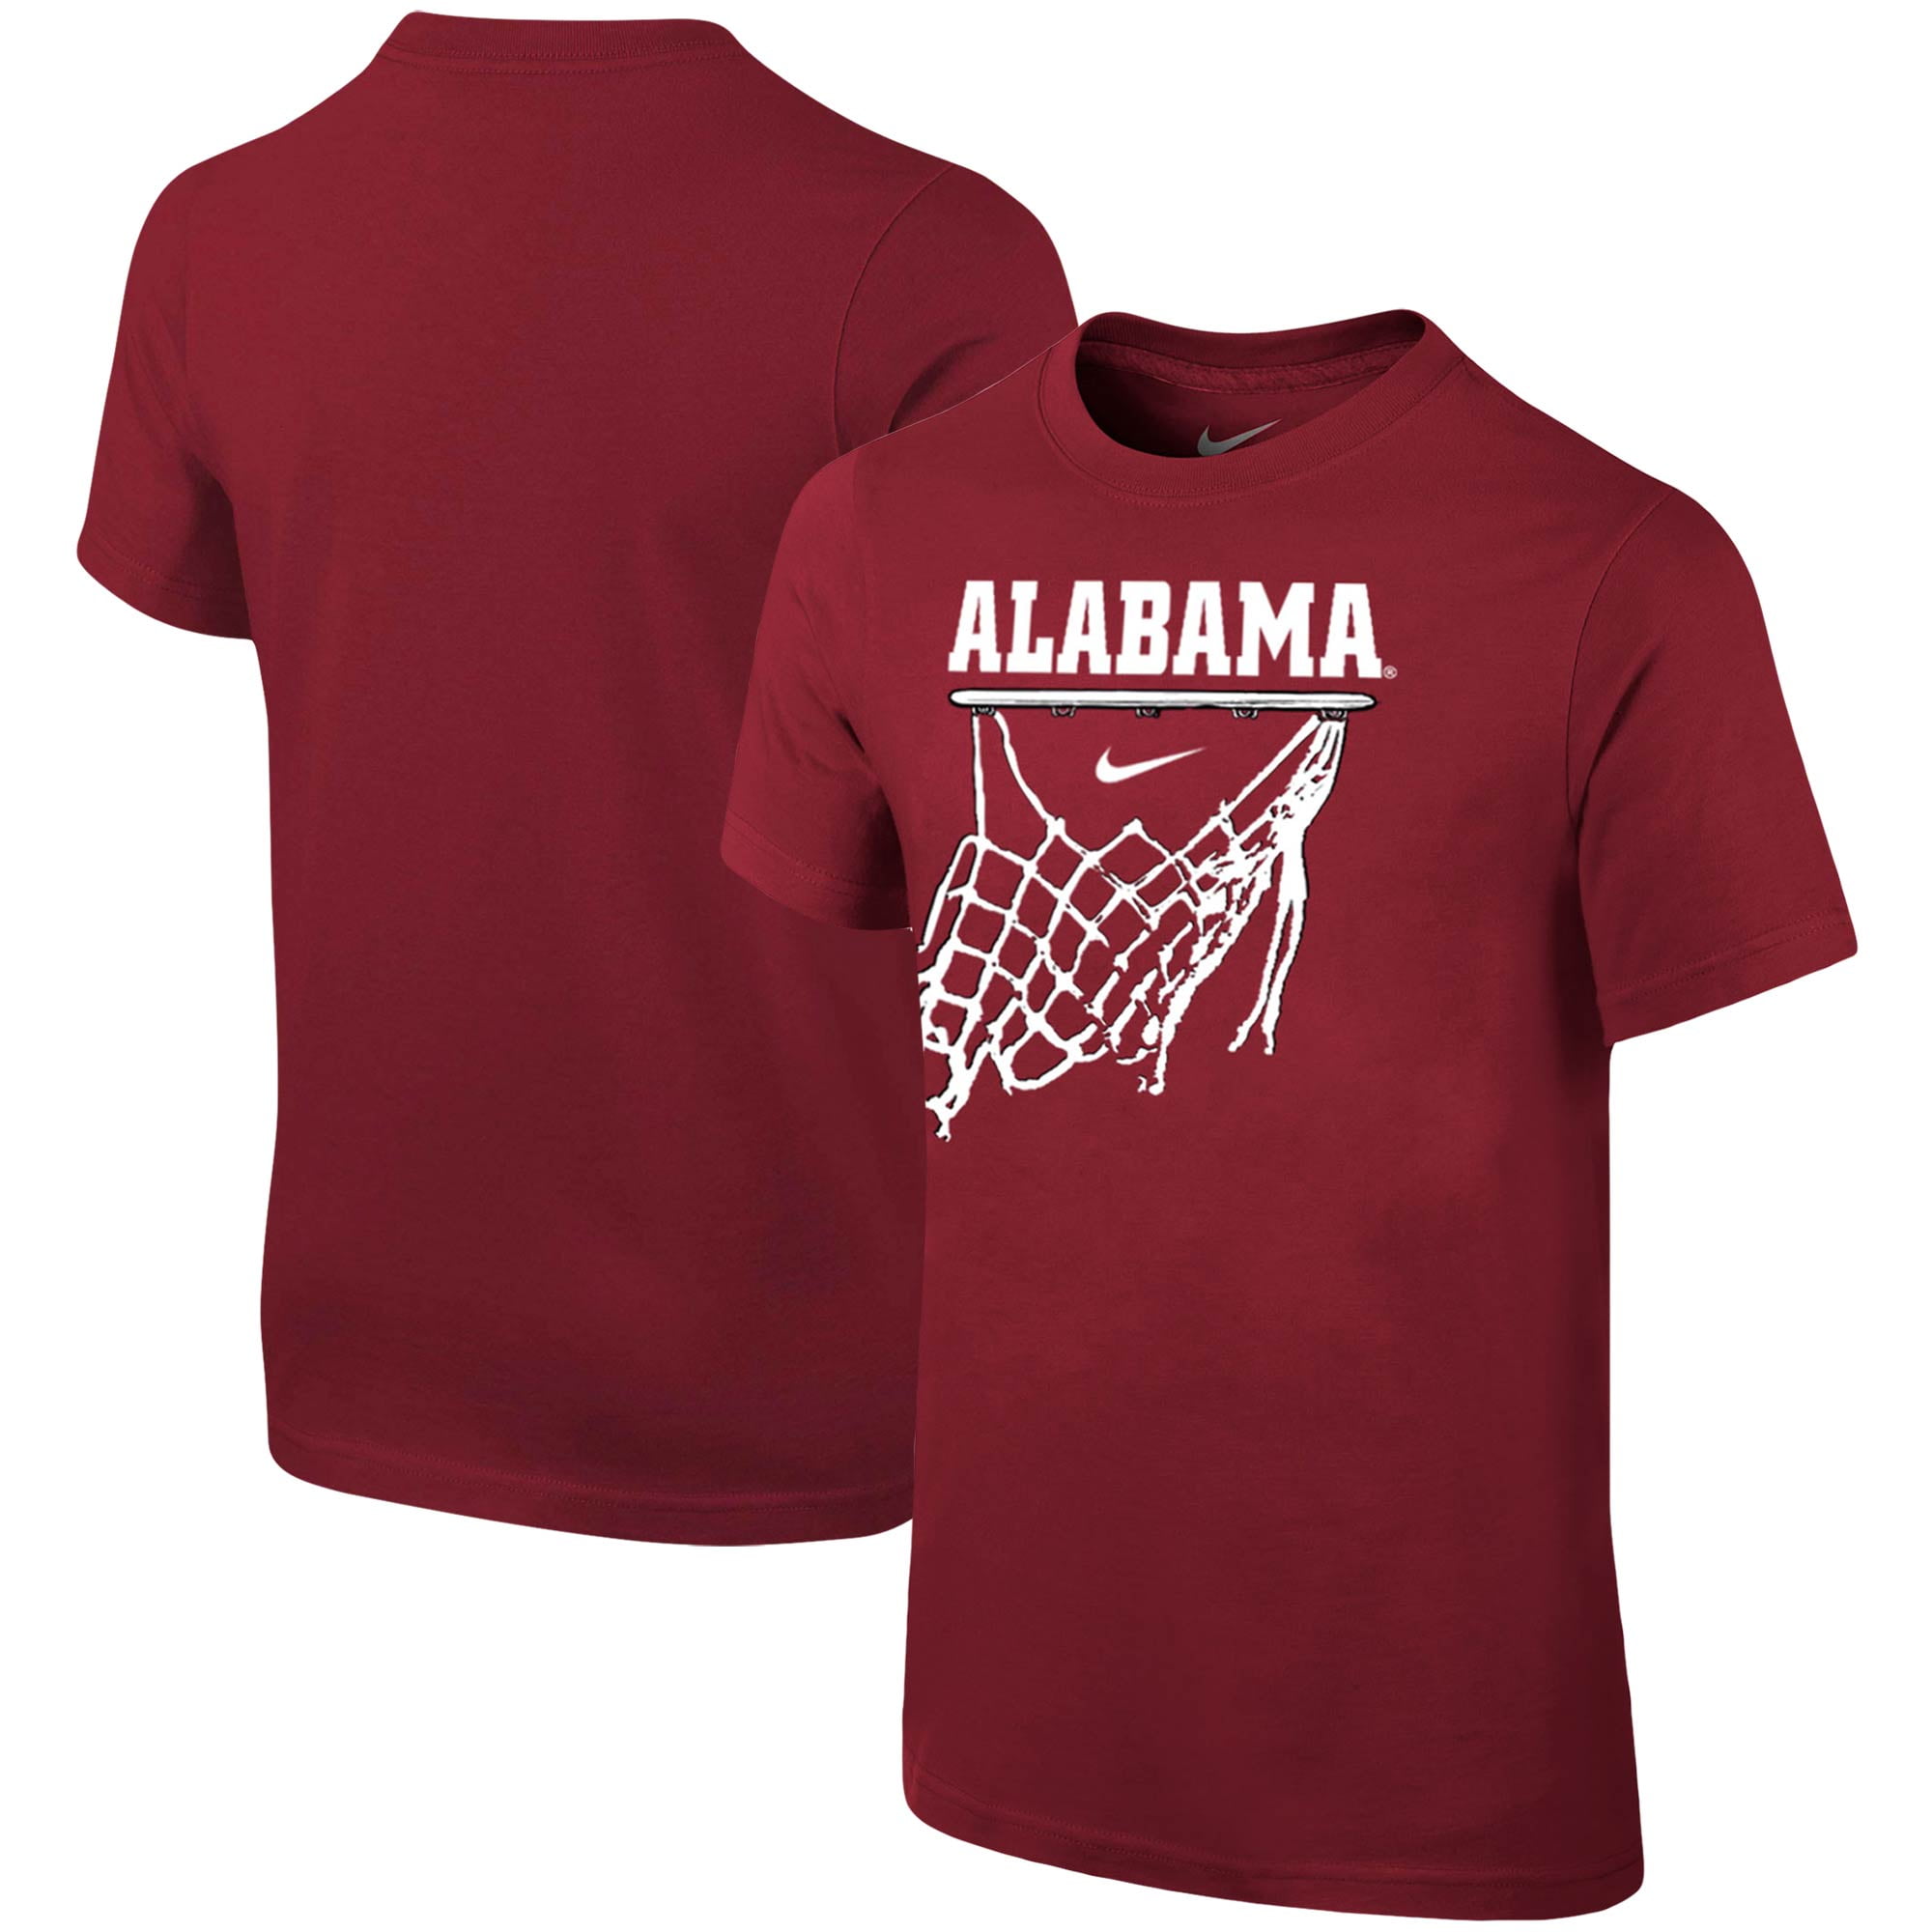 Alabama Crimson Tide Nike Youth Basketball Net T-Shirt - Crimson ...